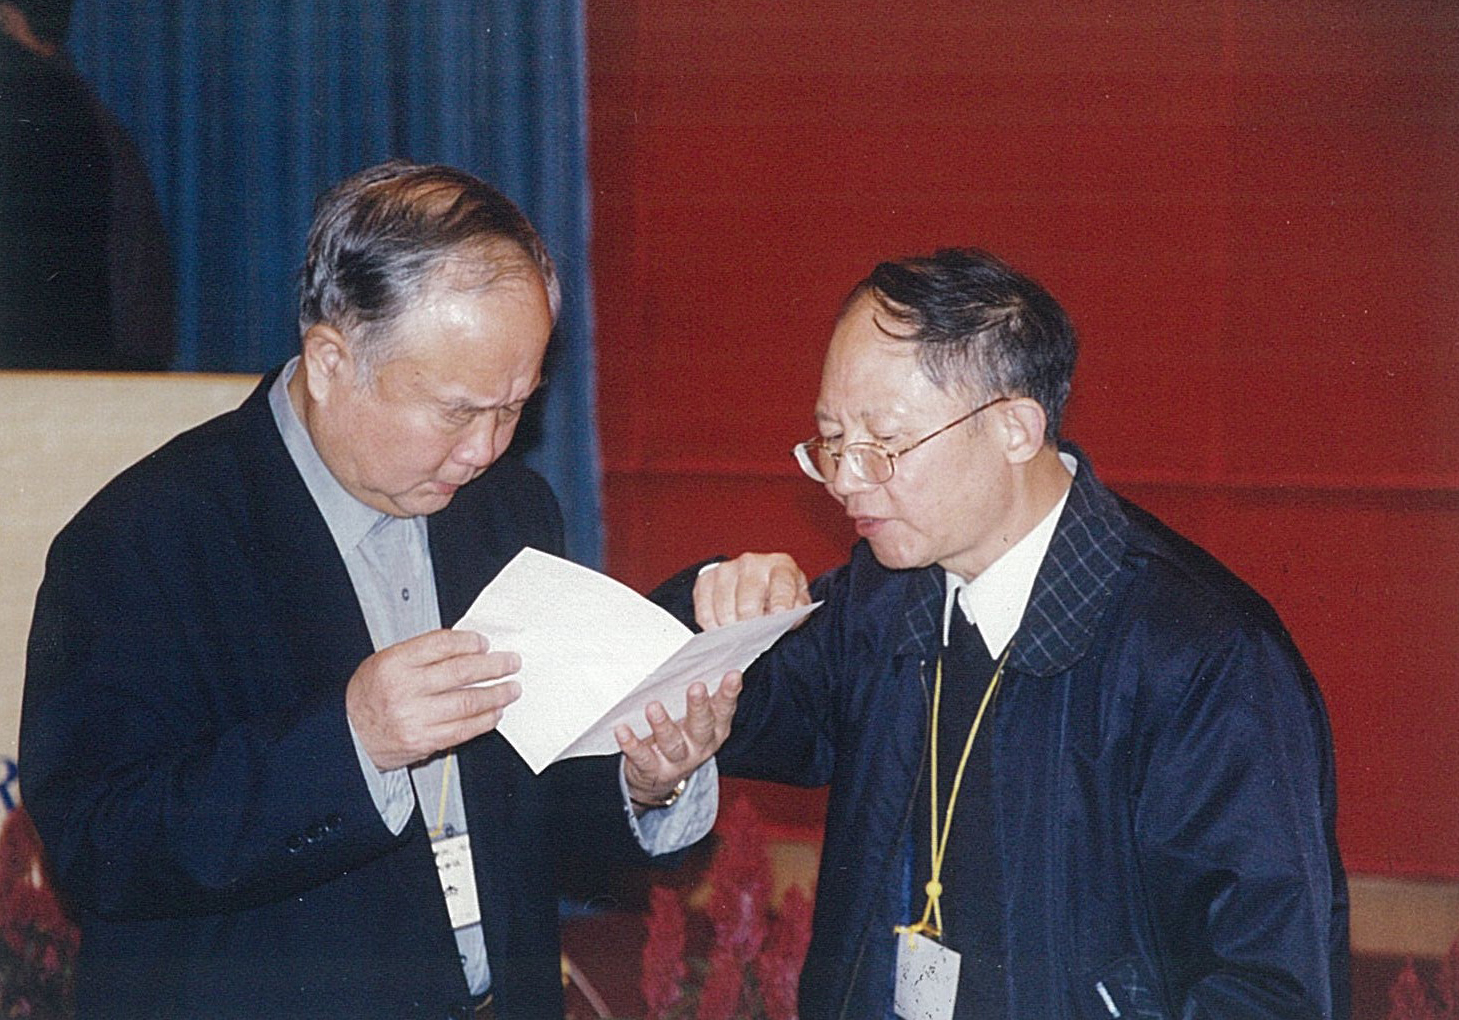 第六、七届理事会扩大会议在广州暨南大学召开（2002年11月21日-24日），白以龙出席会议。